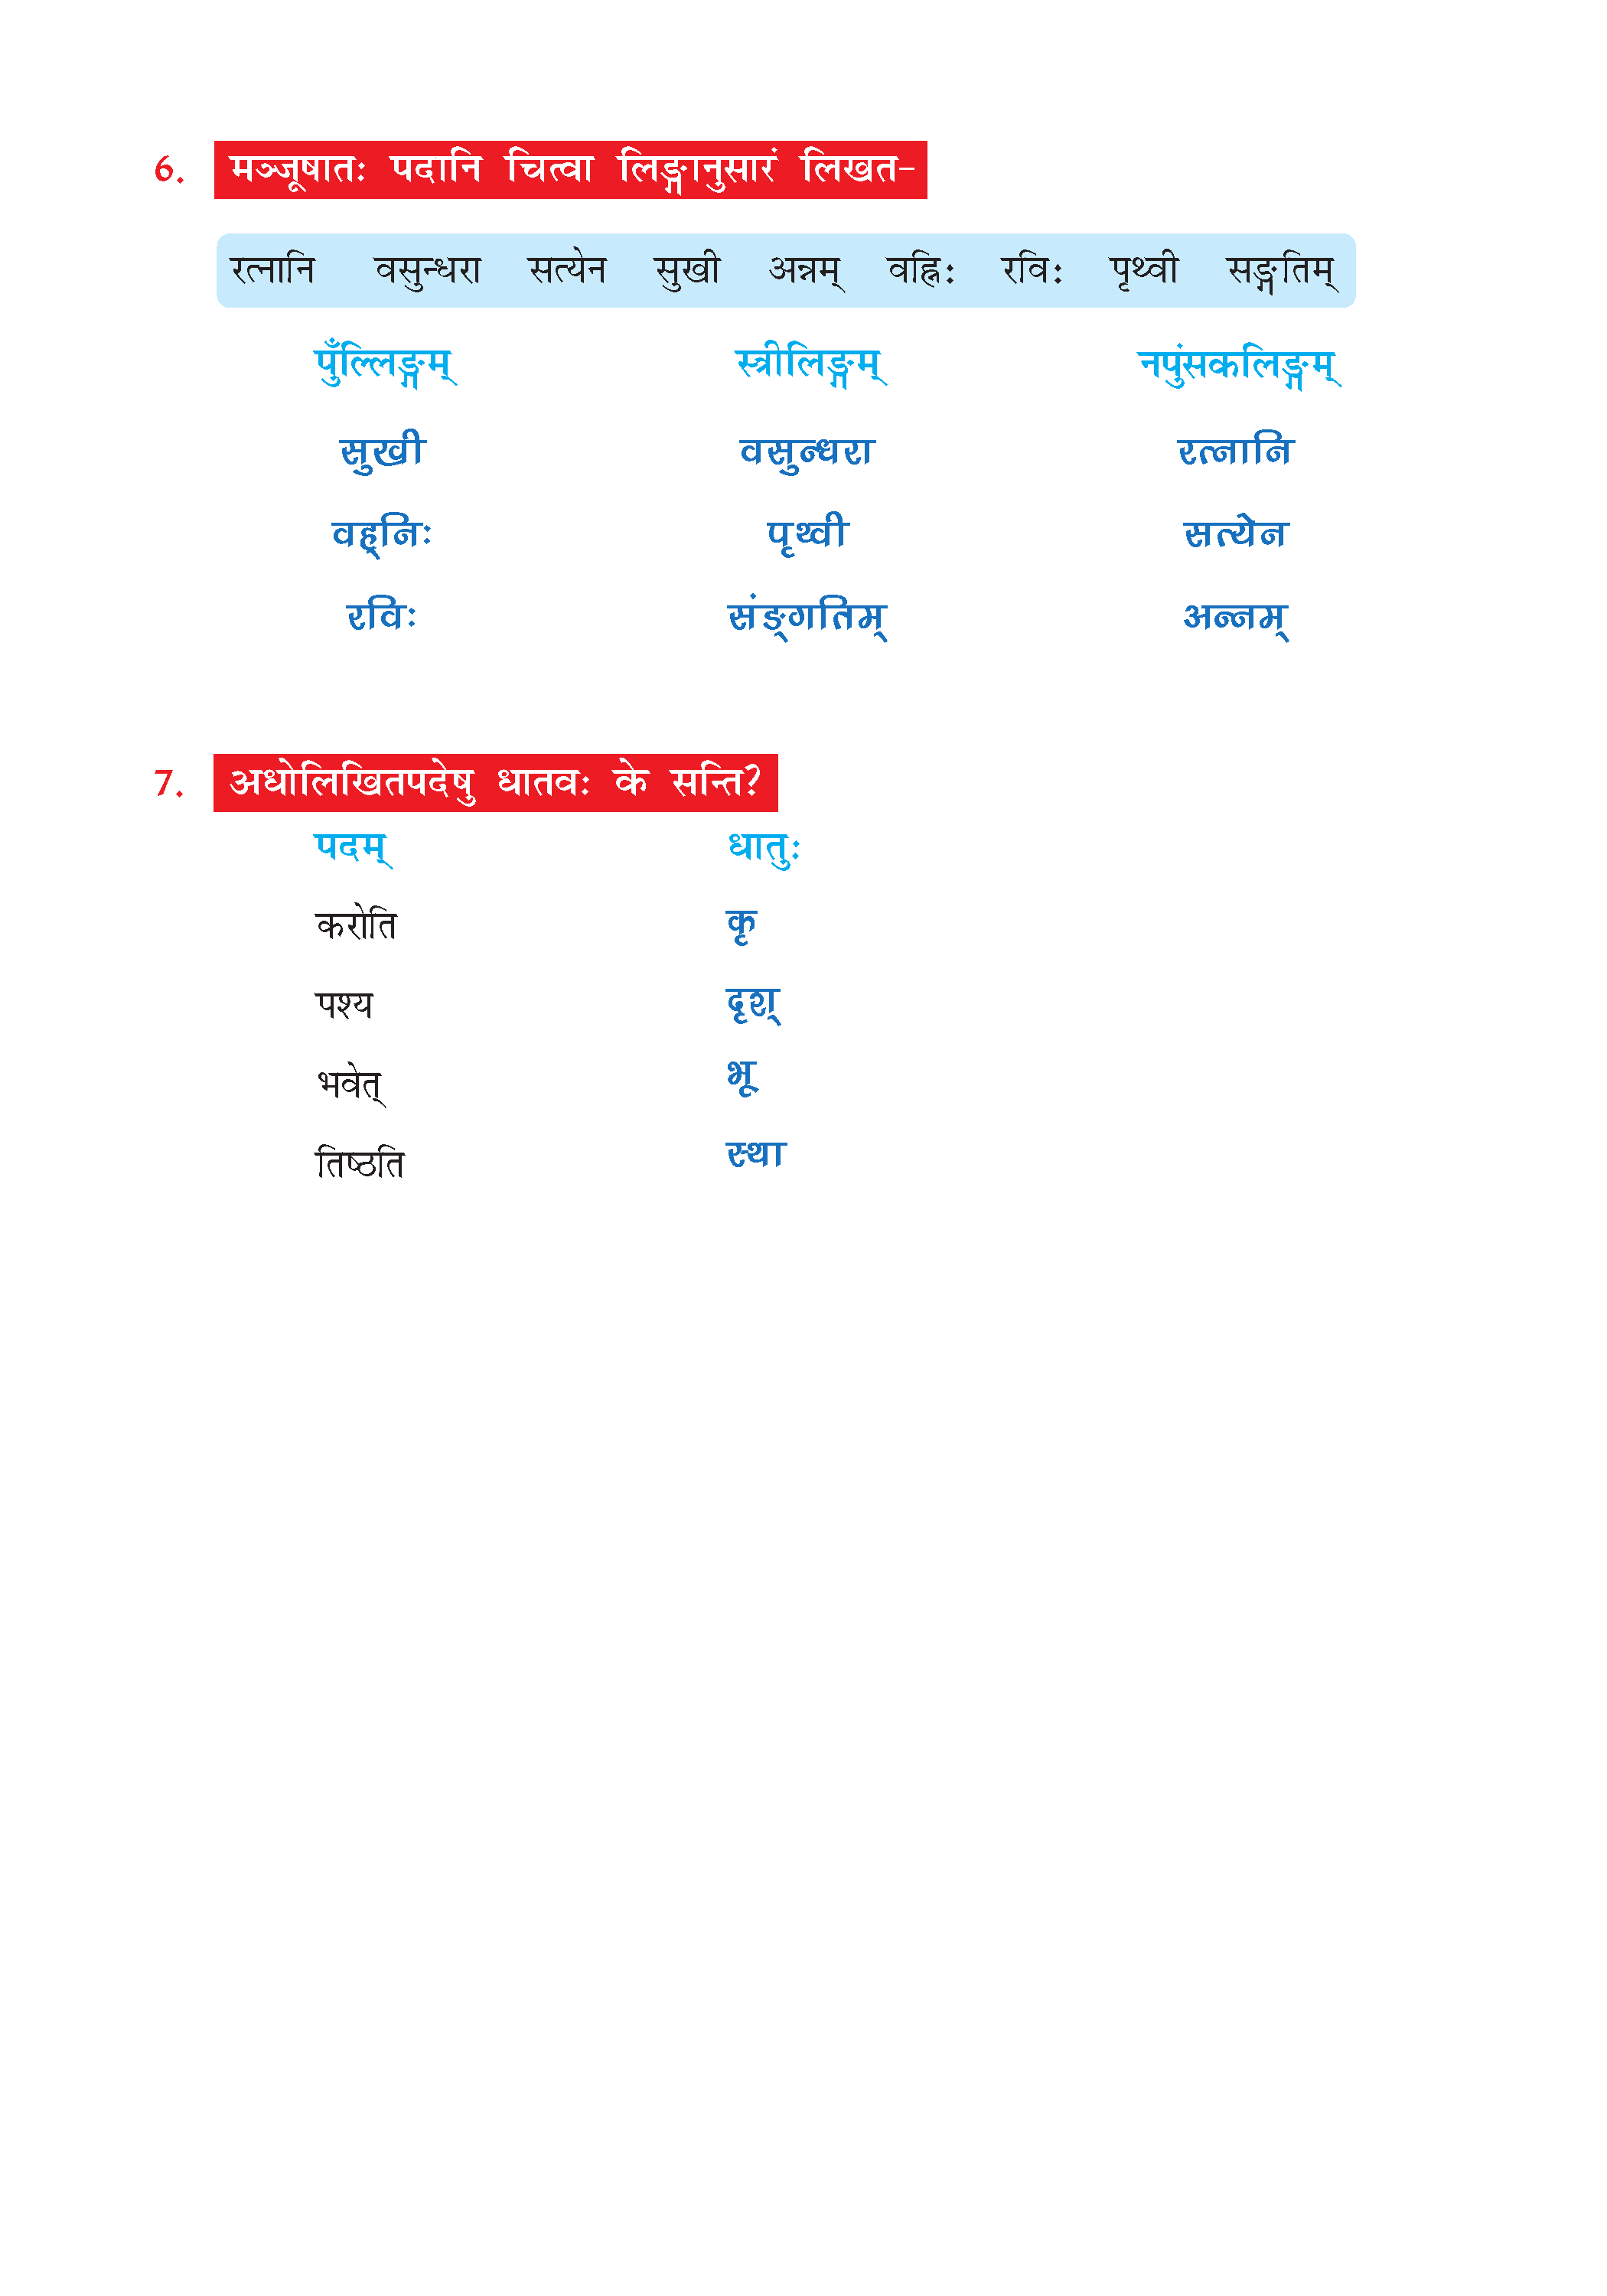 NCERT Solution For Class 7 Sanskrit Chapter 1 part 6